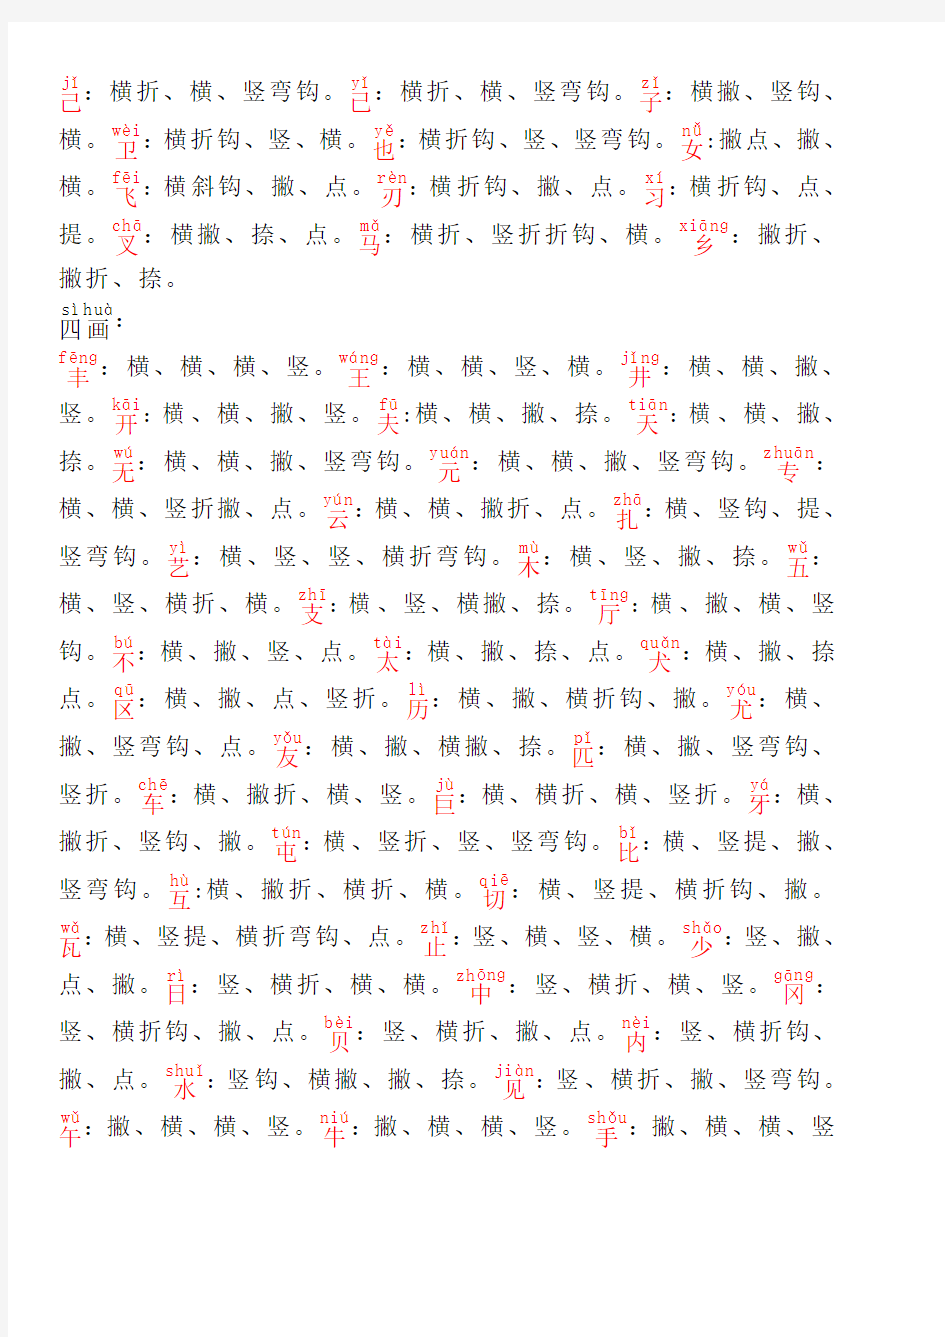 3500个常用汉字笔顺表带拼音